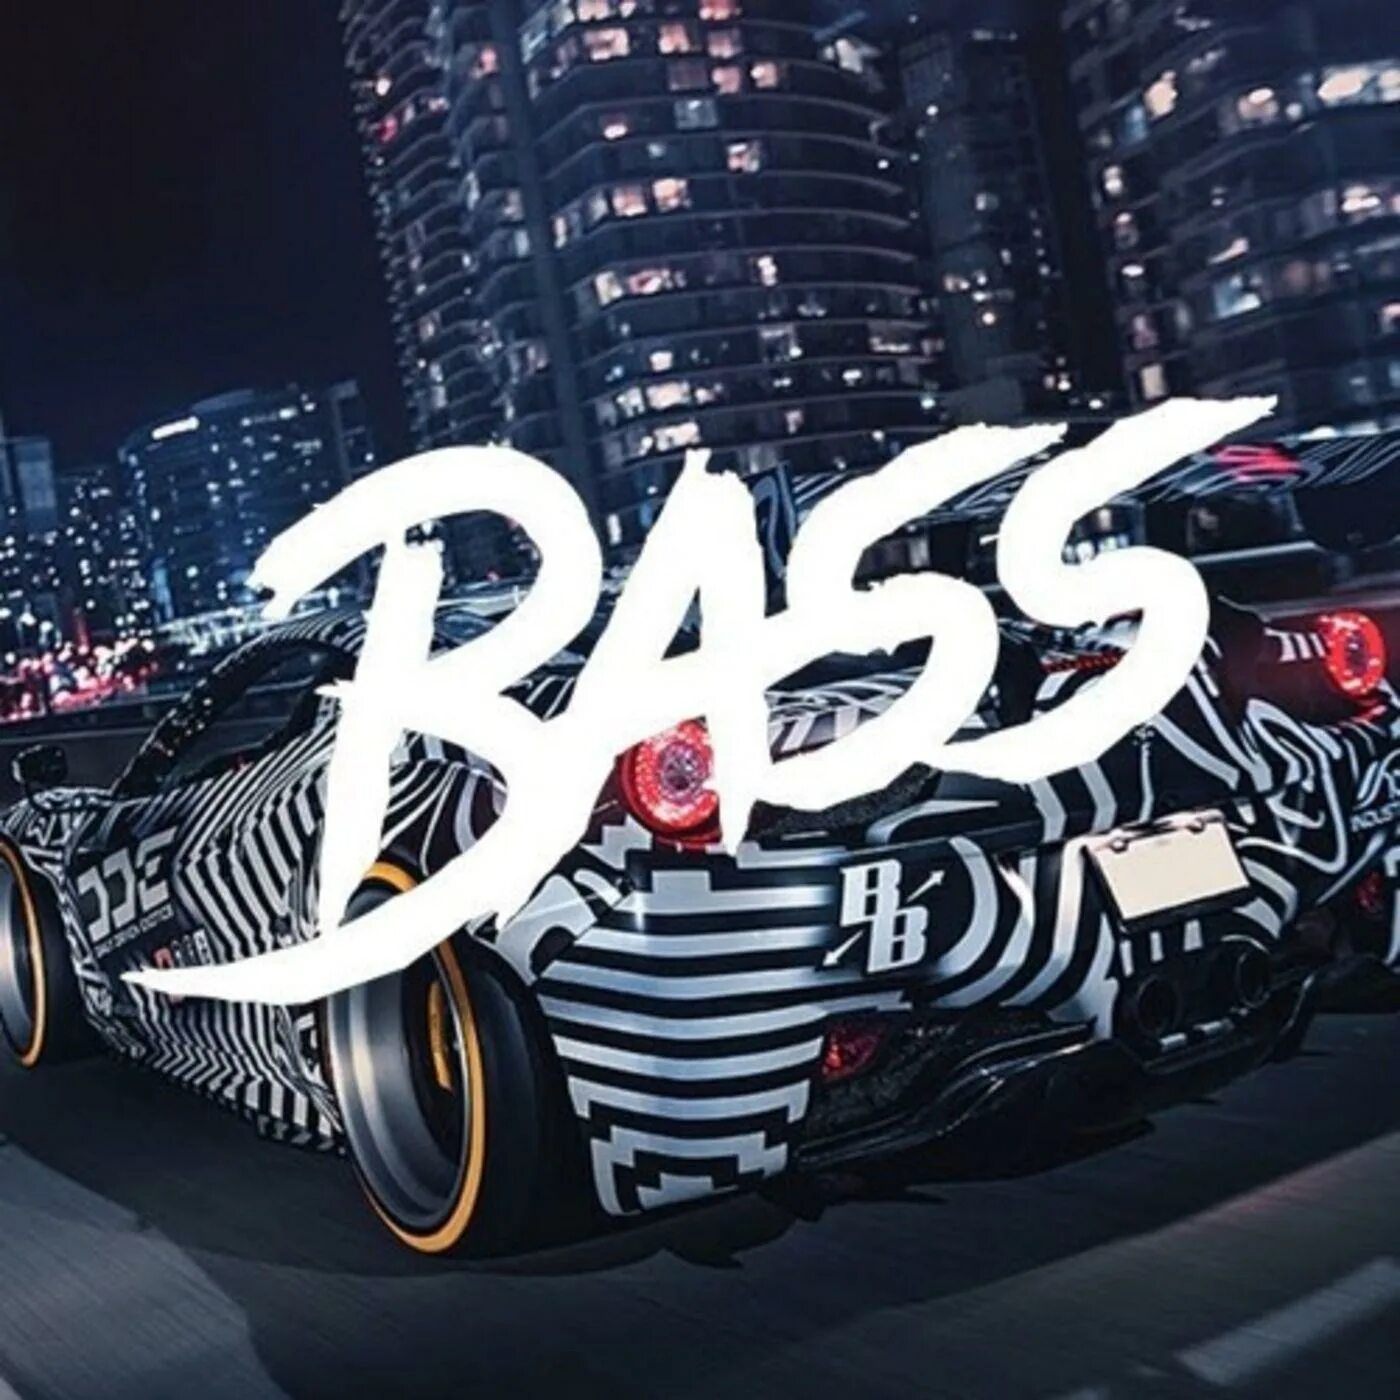 Басс. Басс Мьюзик. Ремикс басс. BASSBOOSTED. Car bass remix